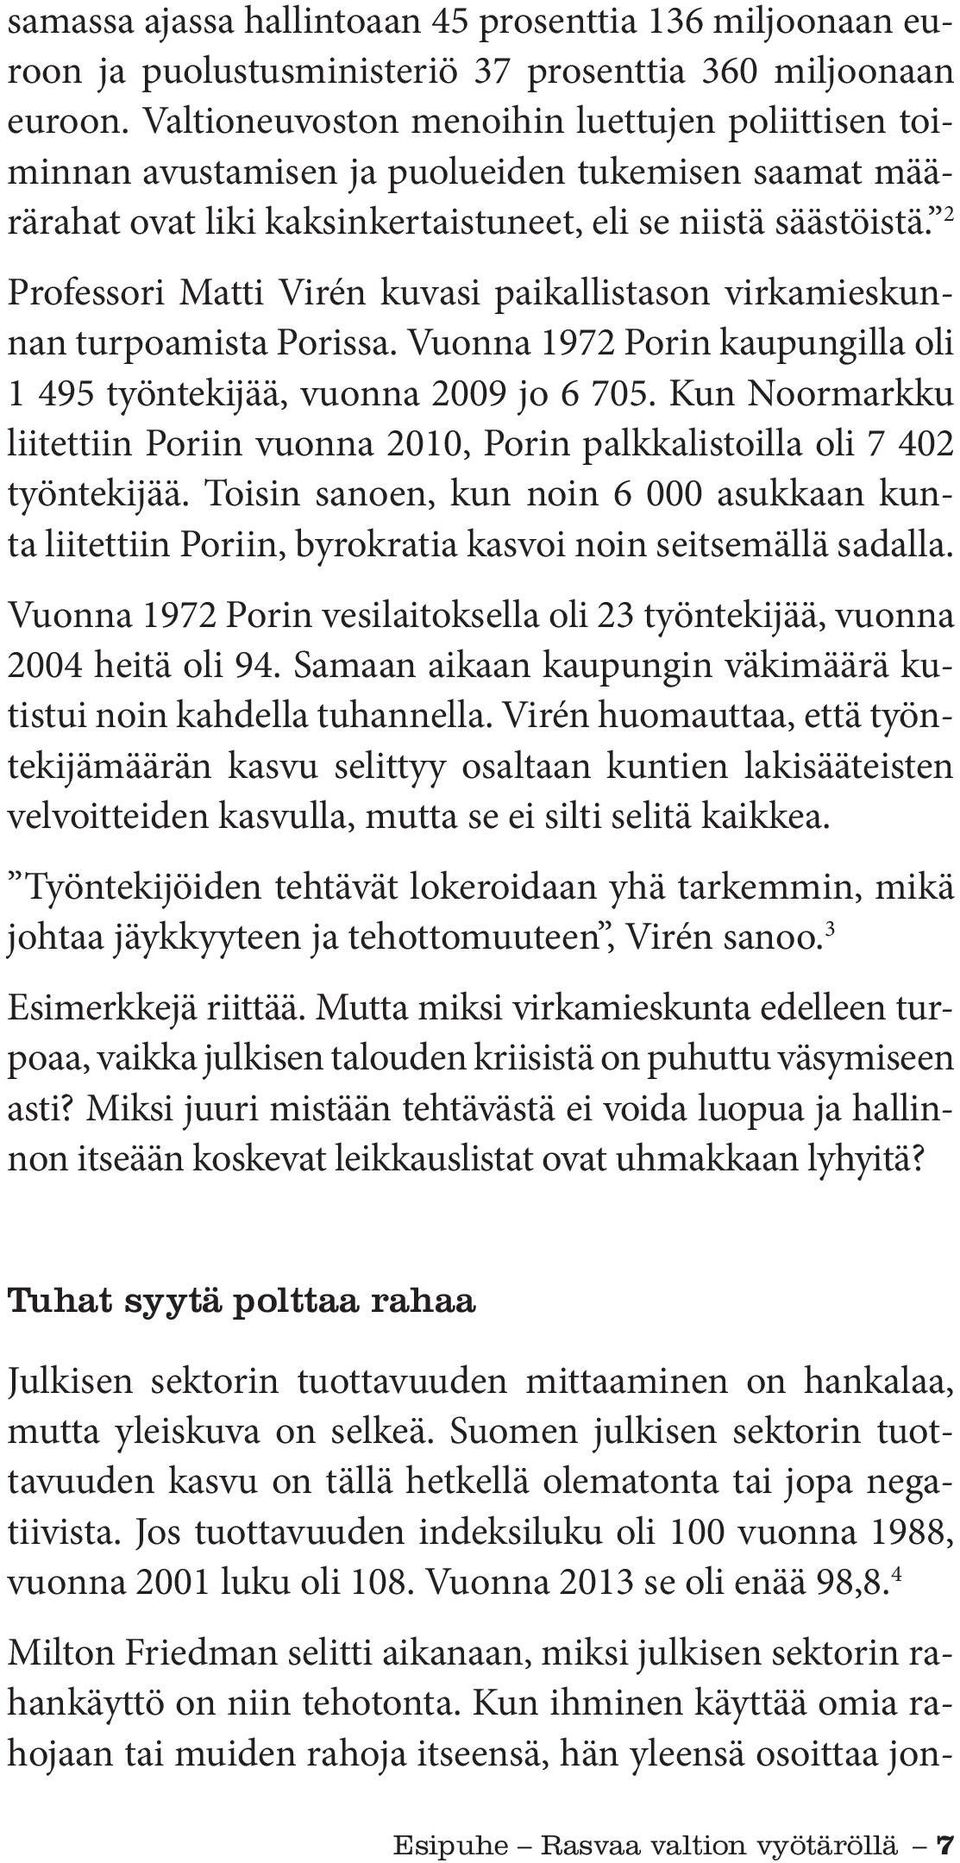 2 Professori Matti Virén kuvasi paikallistason virkamieskunnan turpoamista Porissa. Vuonna 1972 Porin kaupungilla oli 1 495 työntekijää, vuonna 2009 jo 6 705.